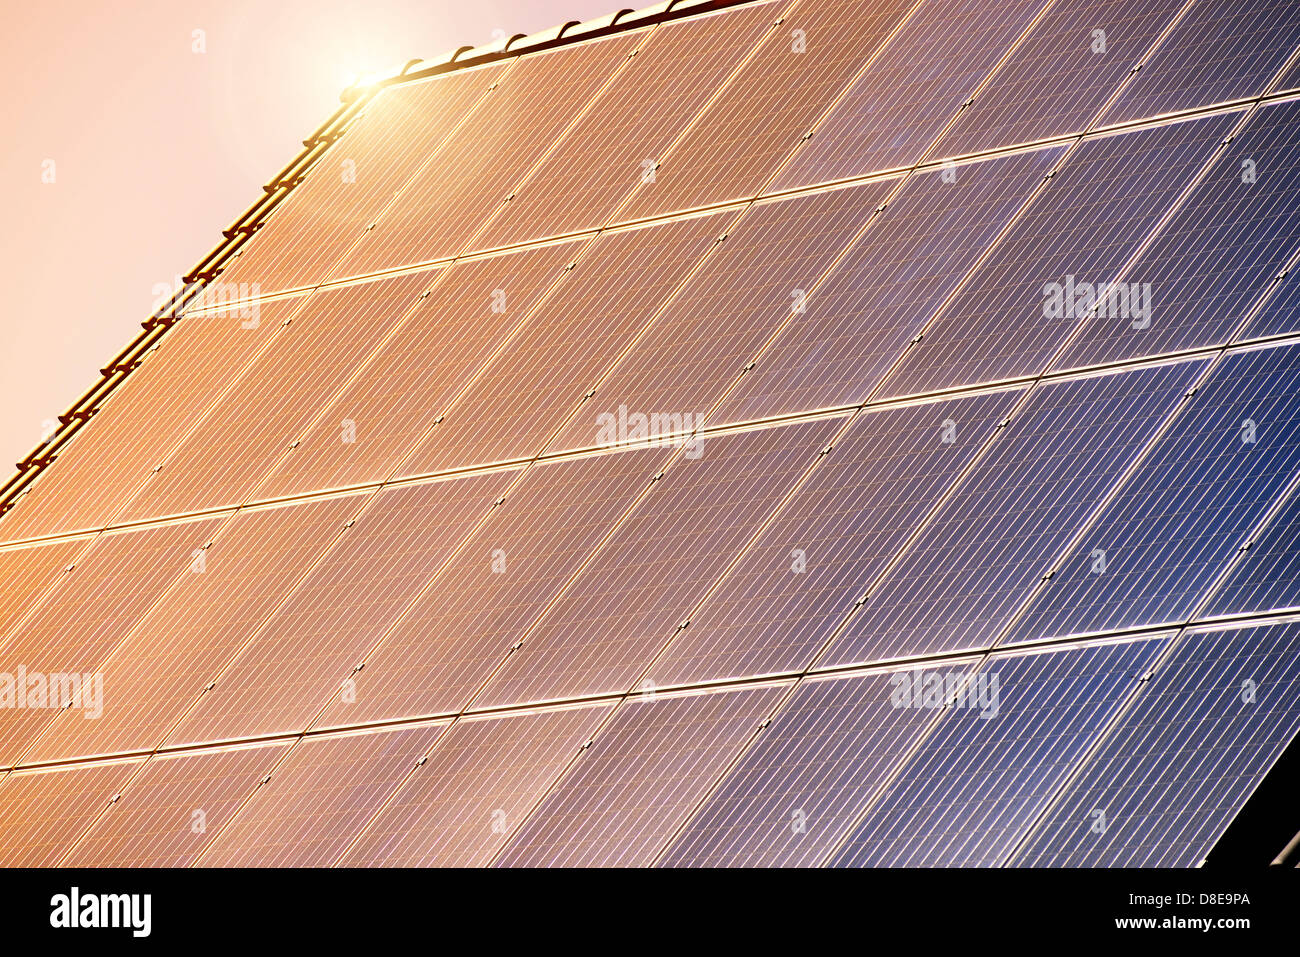 Techo con paneles solares, la energía solar Foto de stock